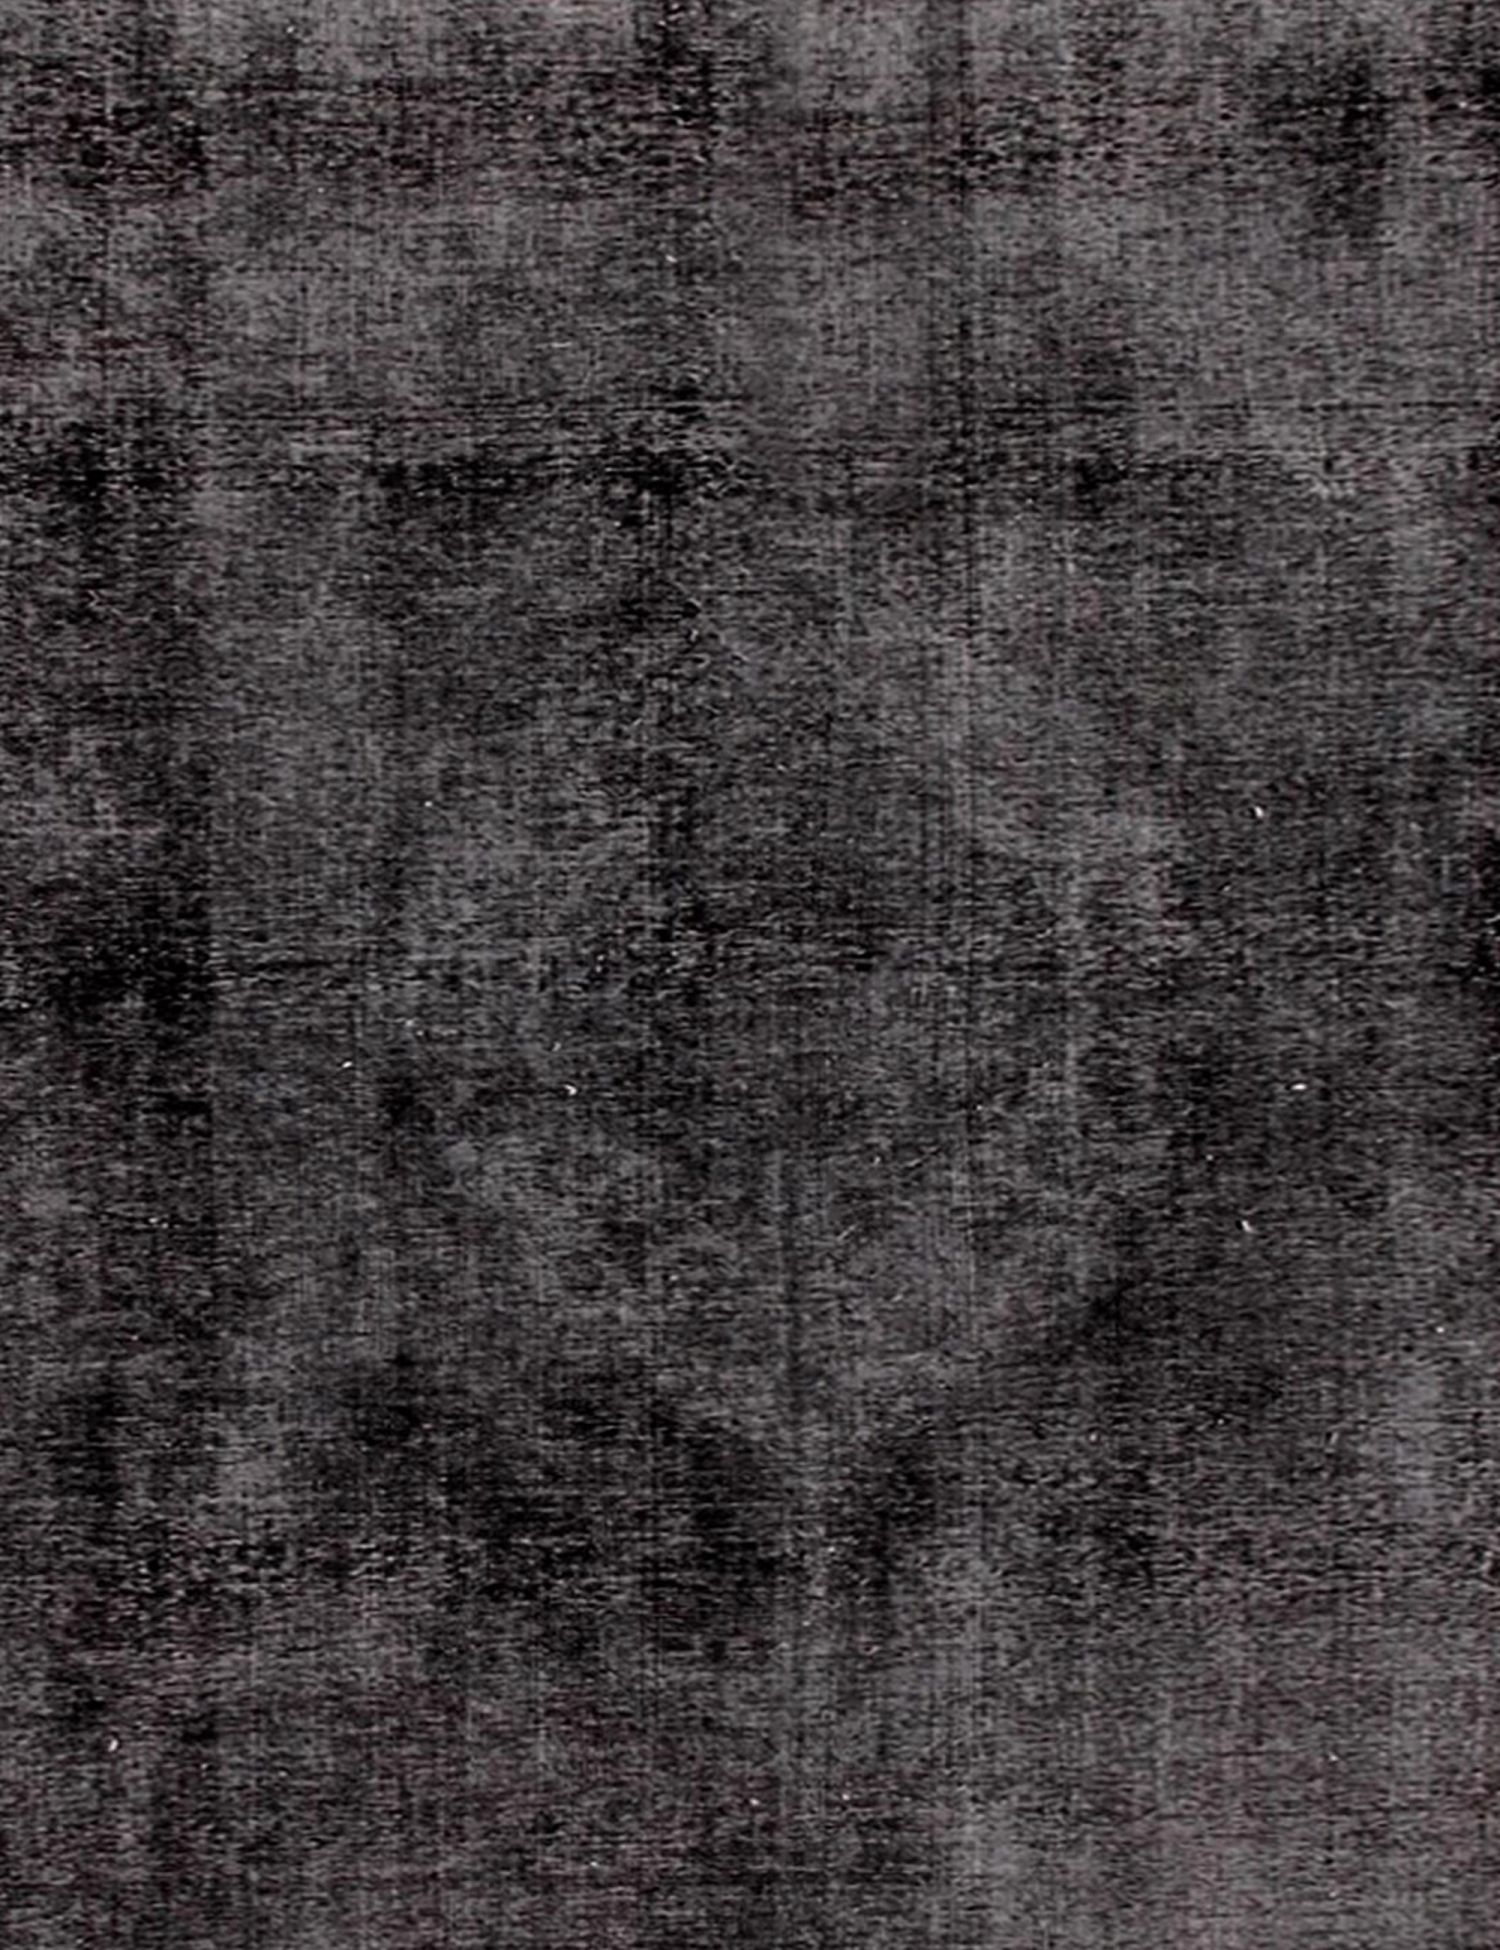 Persischer Vintage Teppich  schwarz <br/>253 x 253 cm